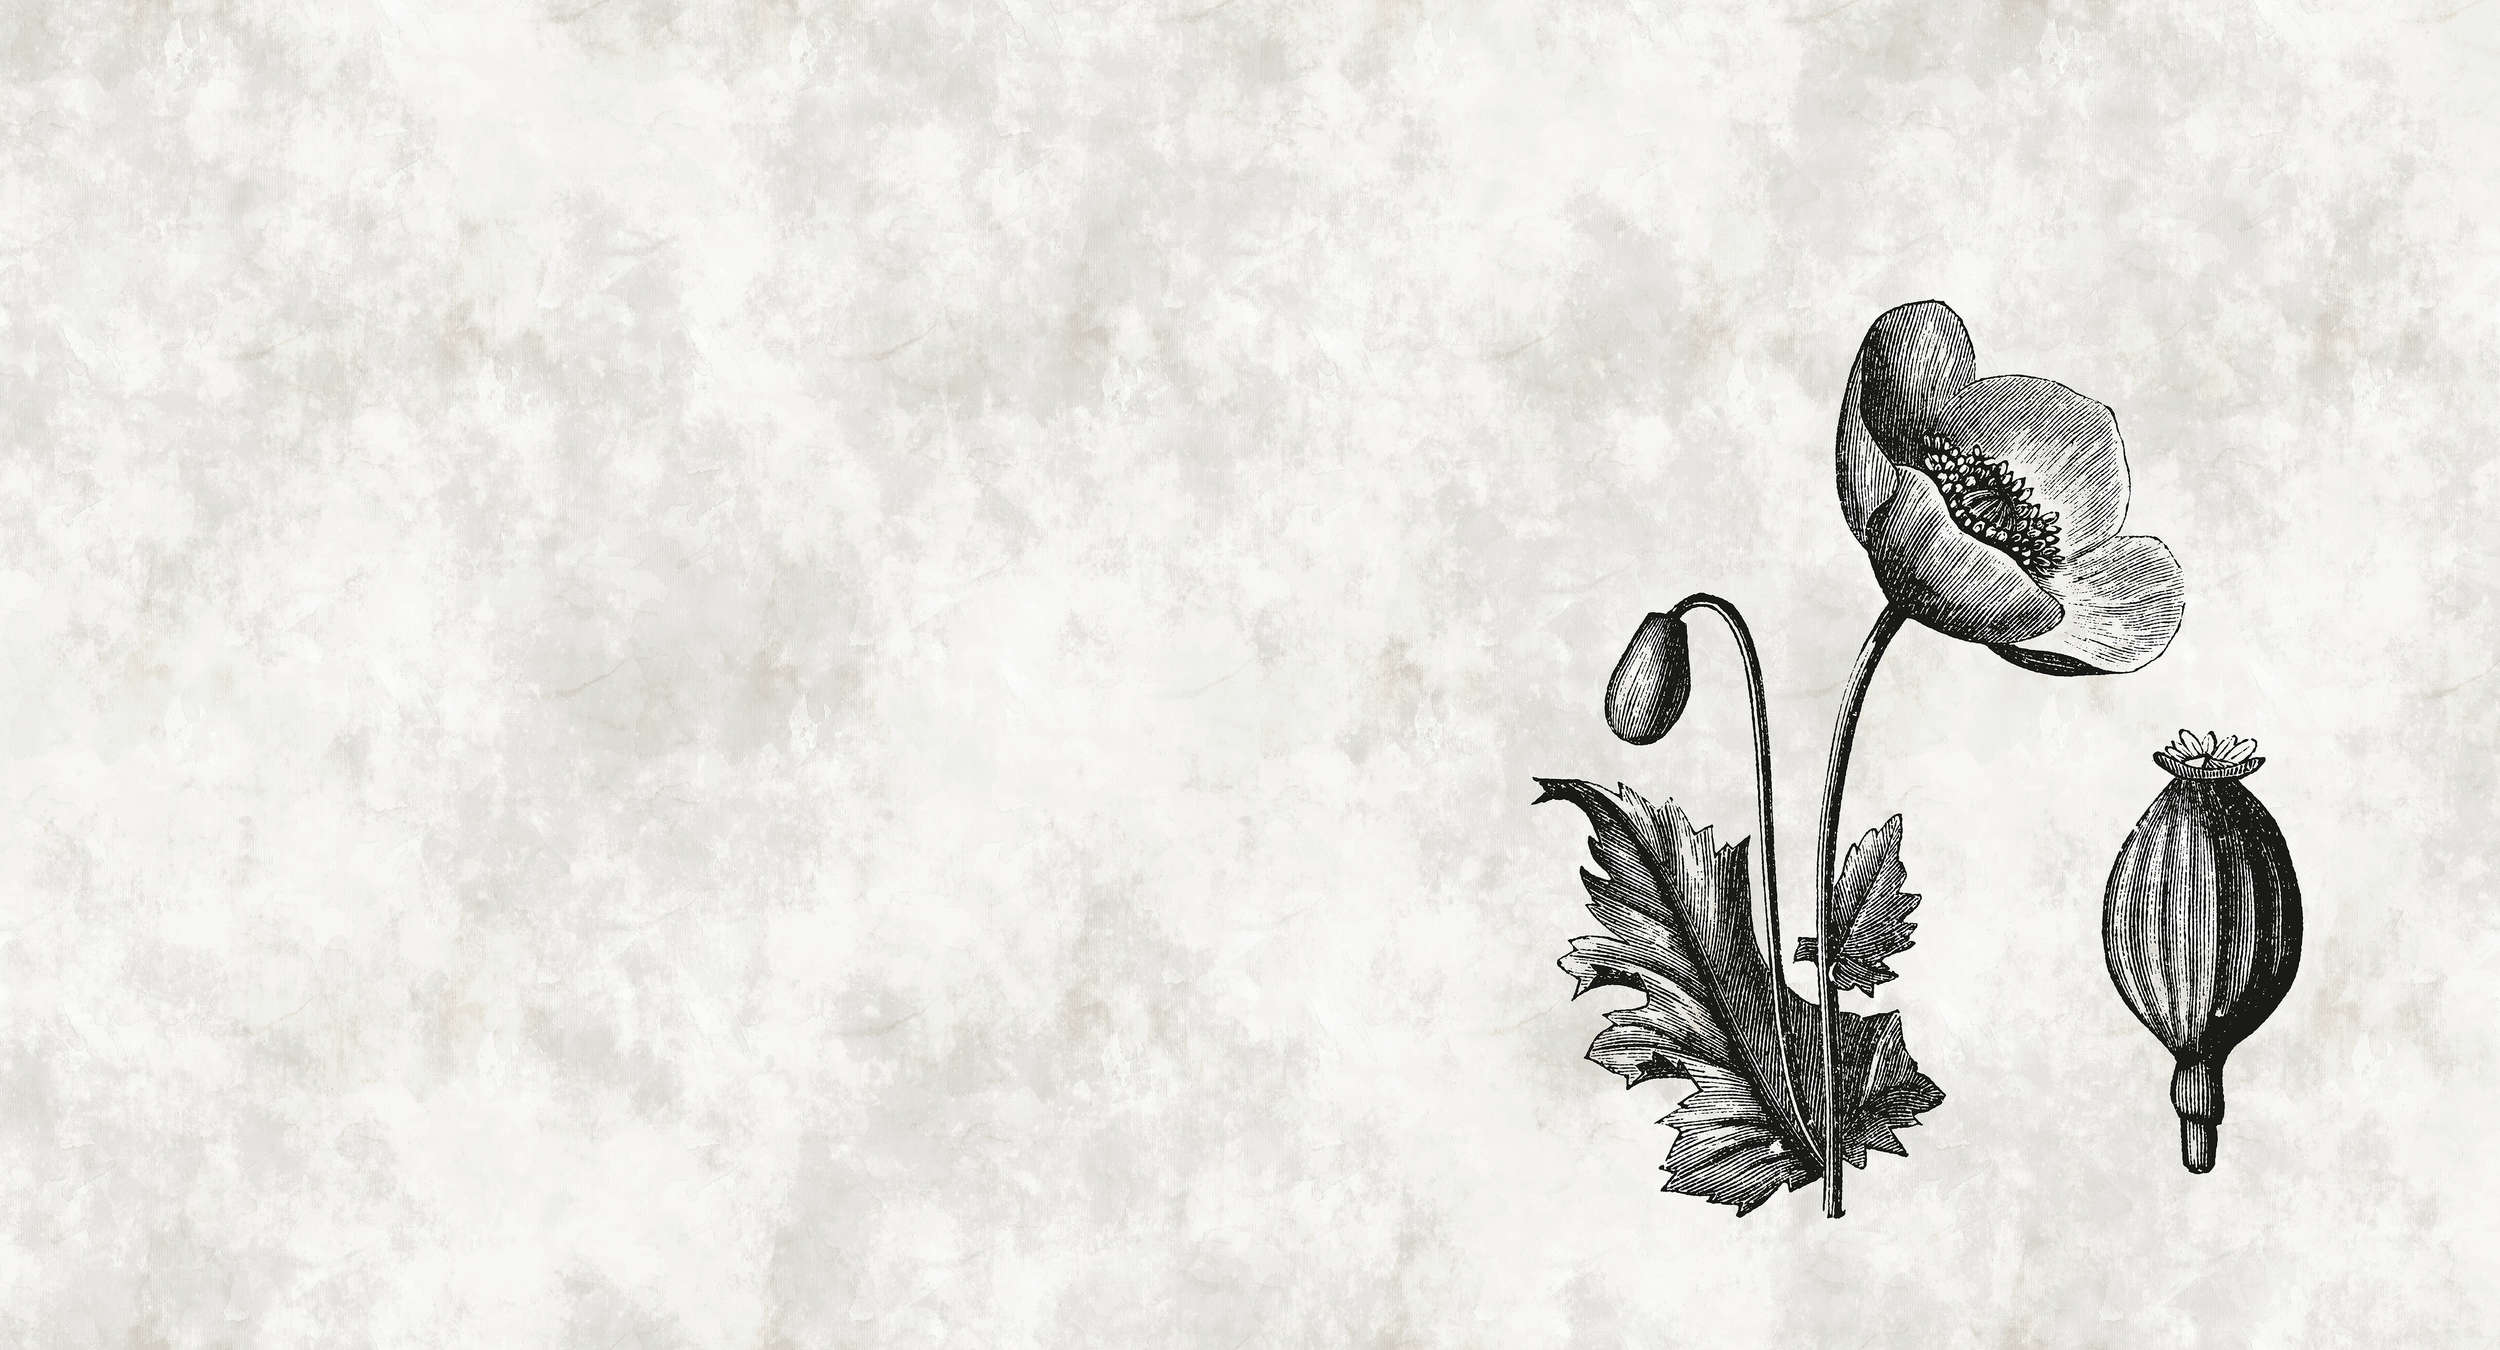             Carta da parati in stile botanico con fiori di papavero in bianco e nero
        